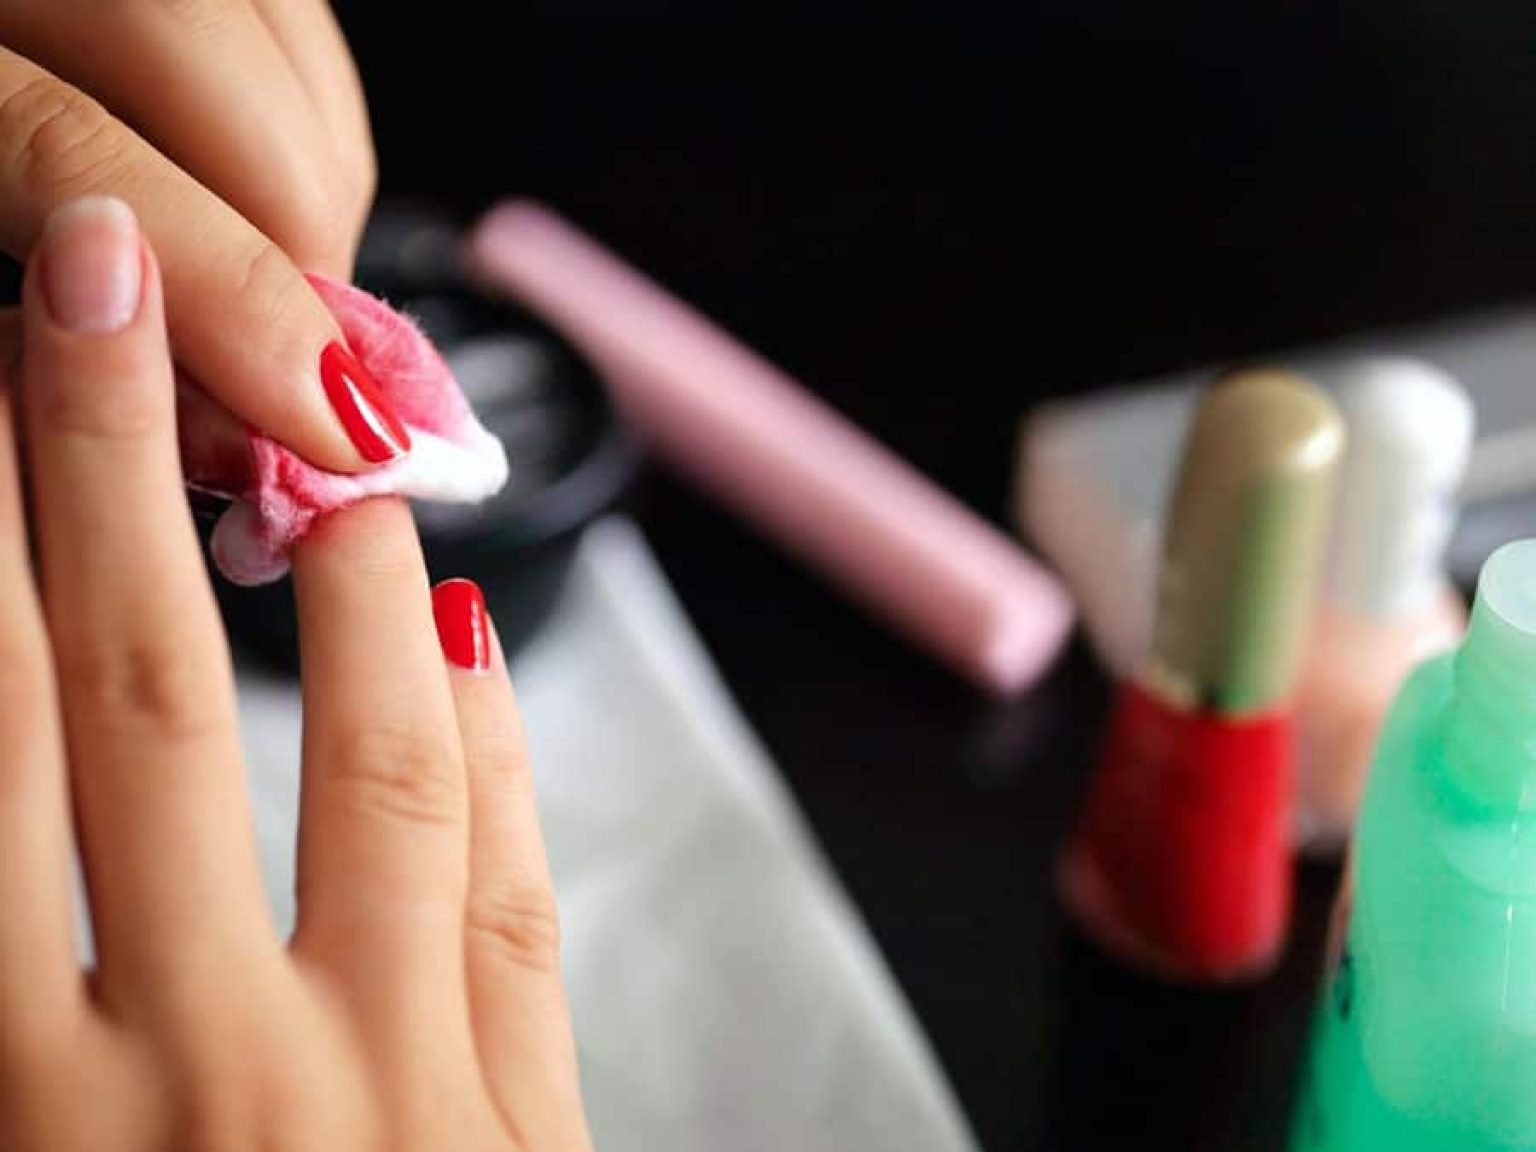 designer brands nail polish remover